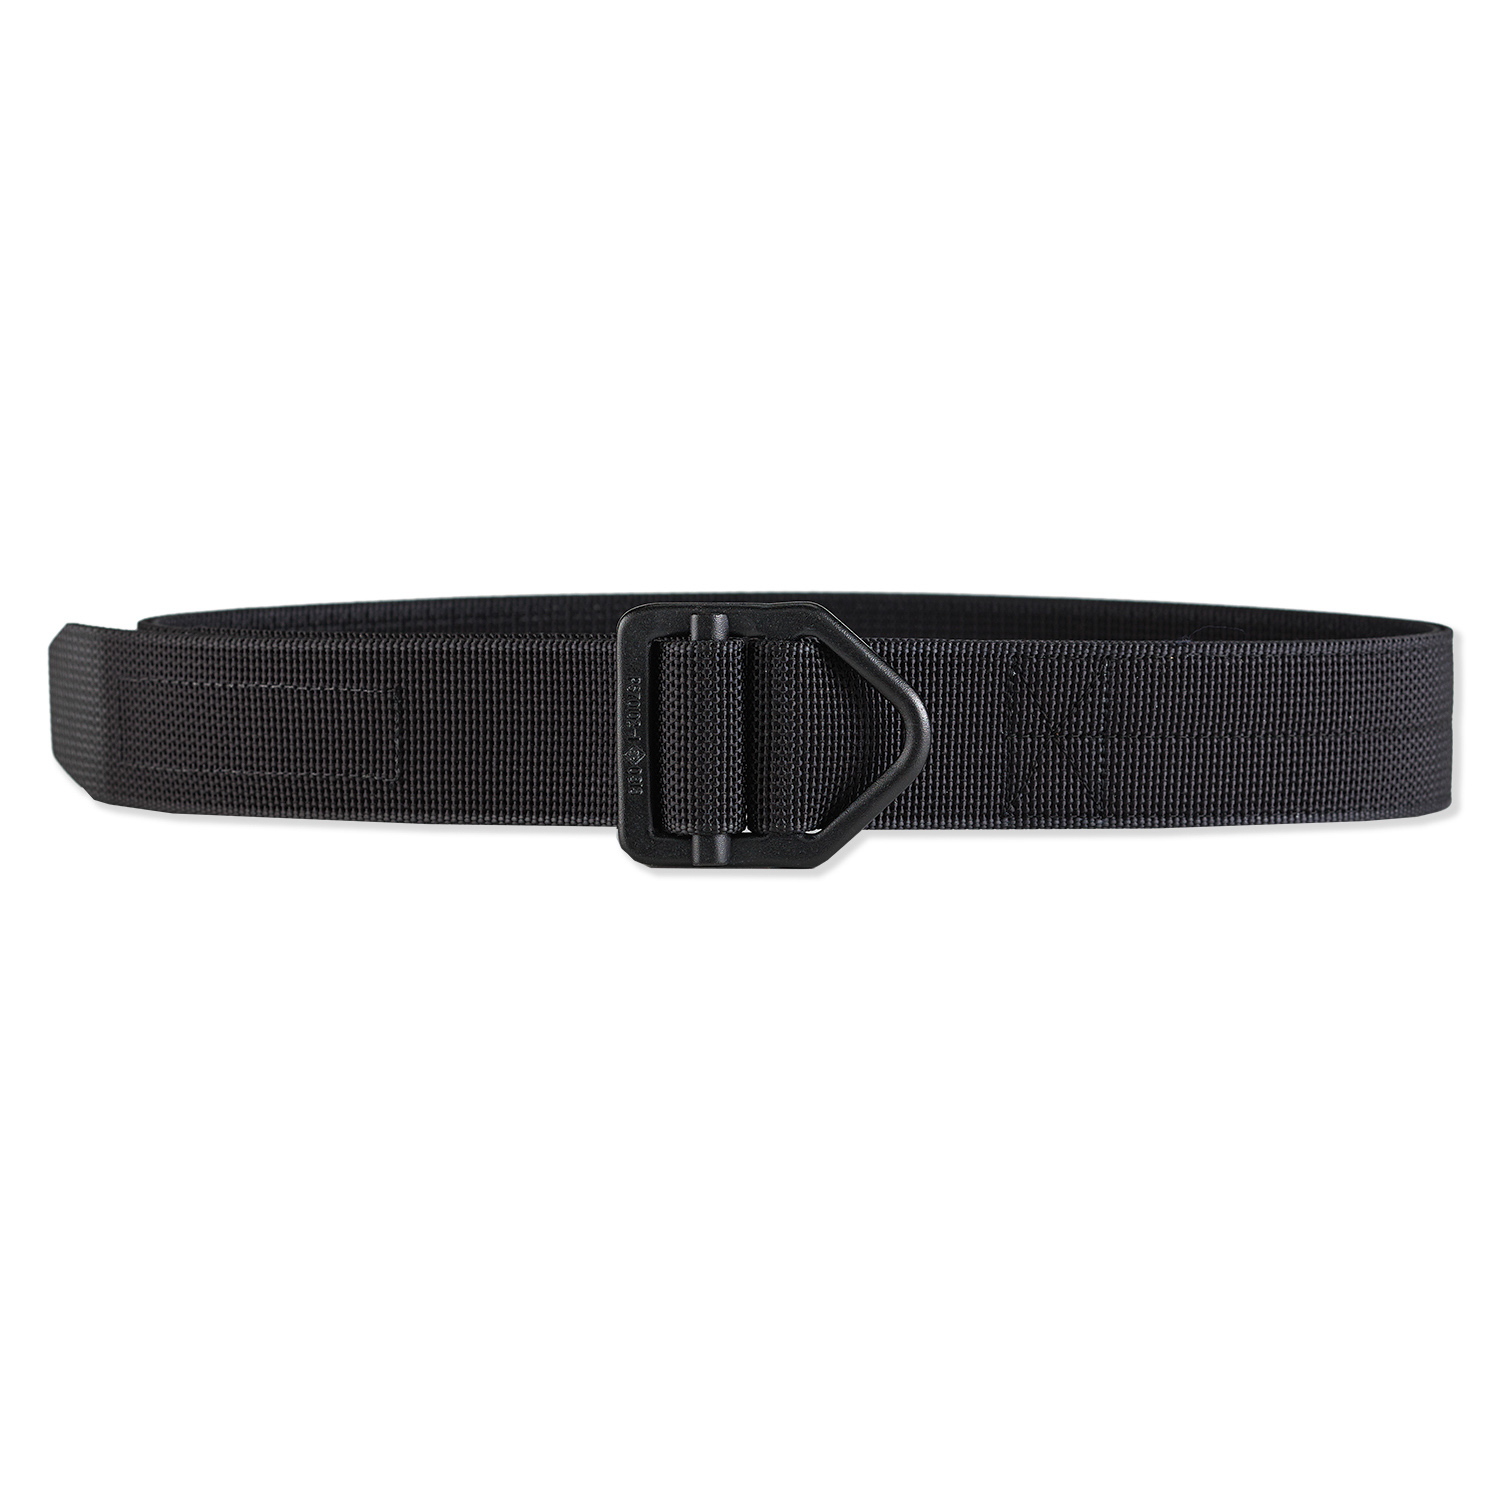 Galco Instructors Non Reinforced Belt 1.5 in Wide Black Large Bk LG for sale online 